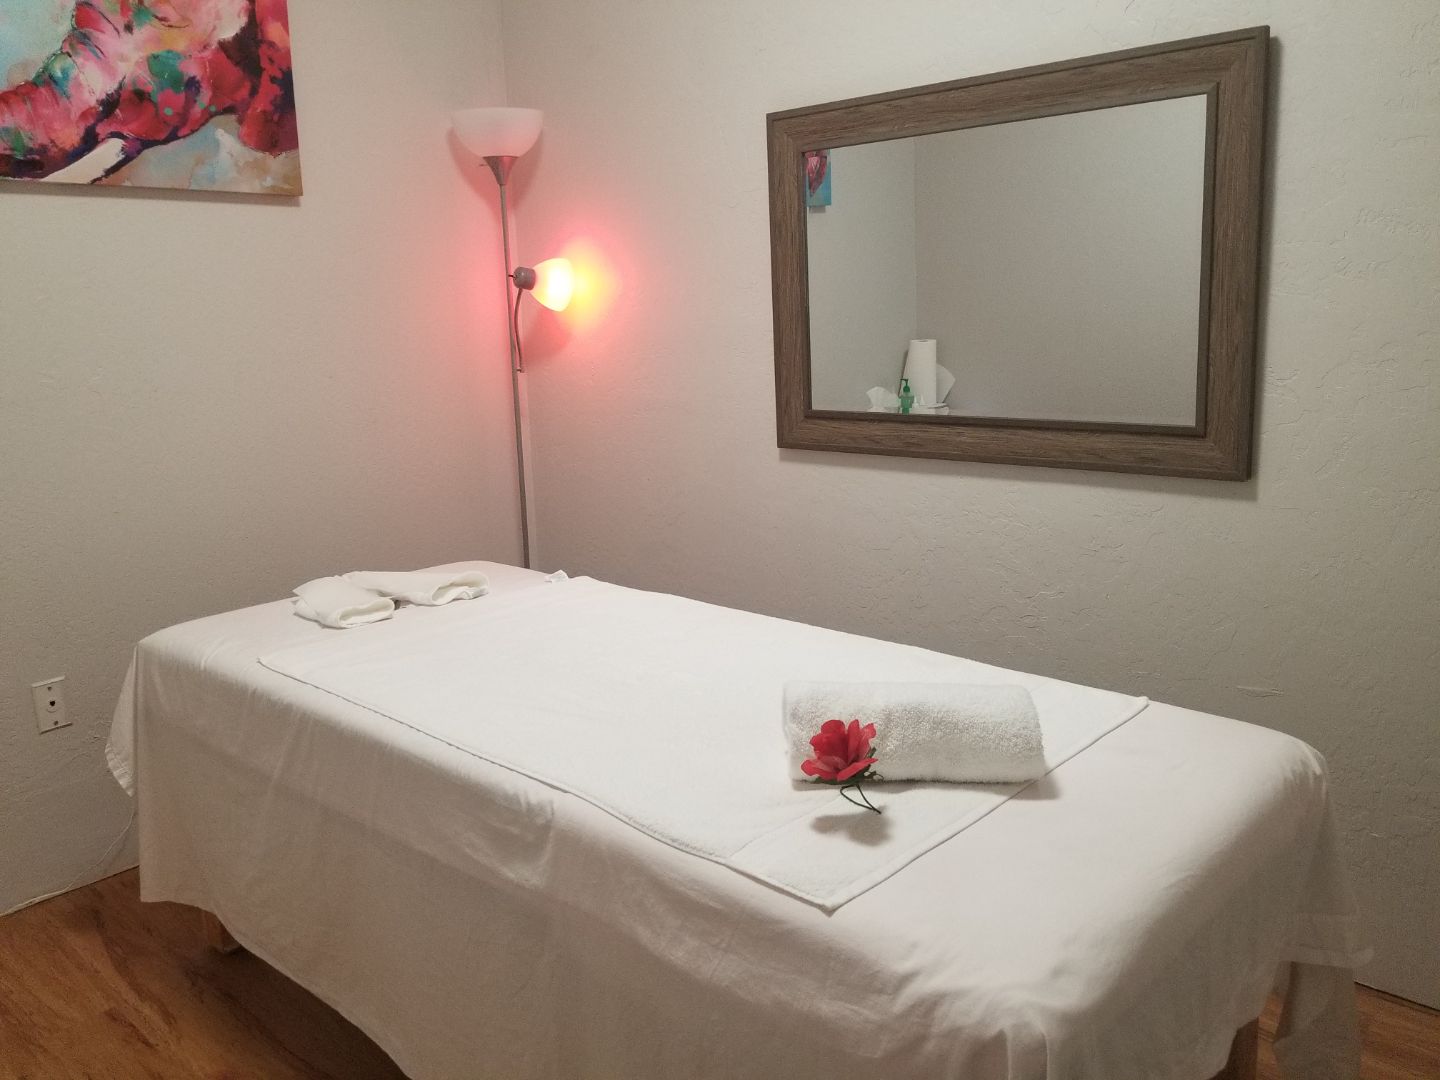 Asian Massage Chiang Mai Spa - Massage Therapist in Glendale